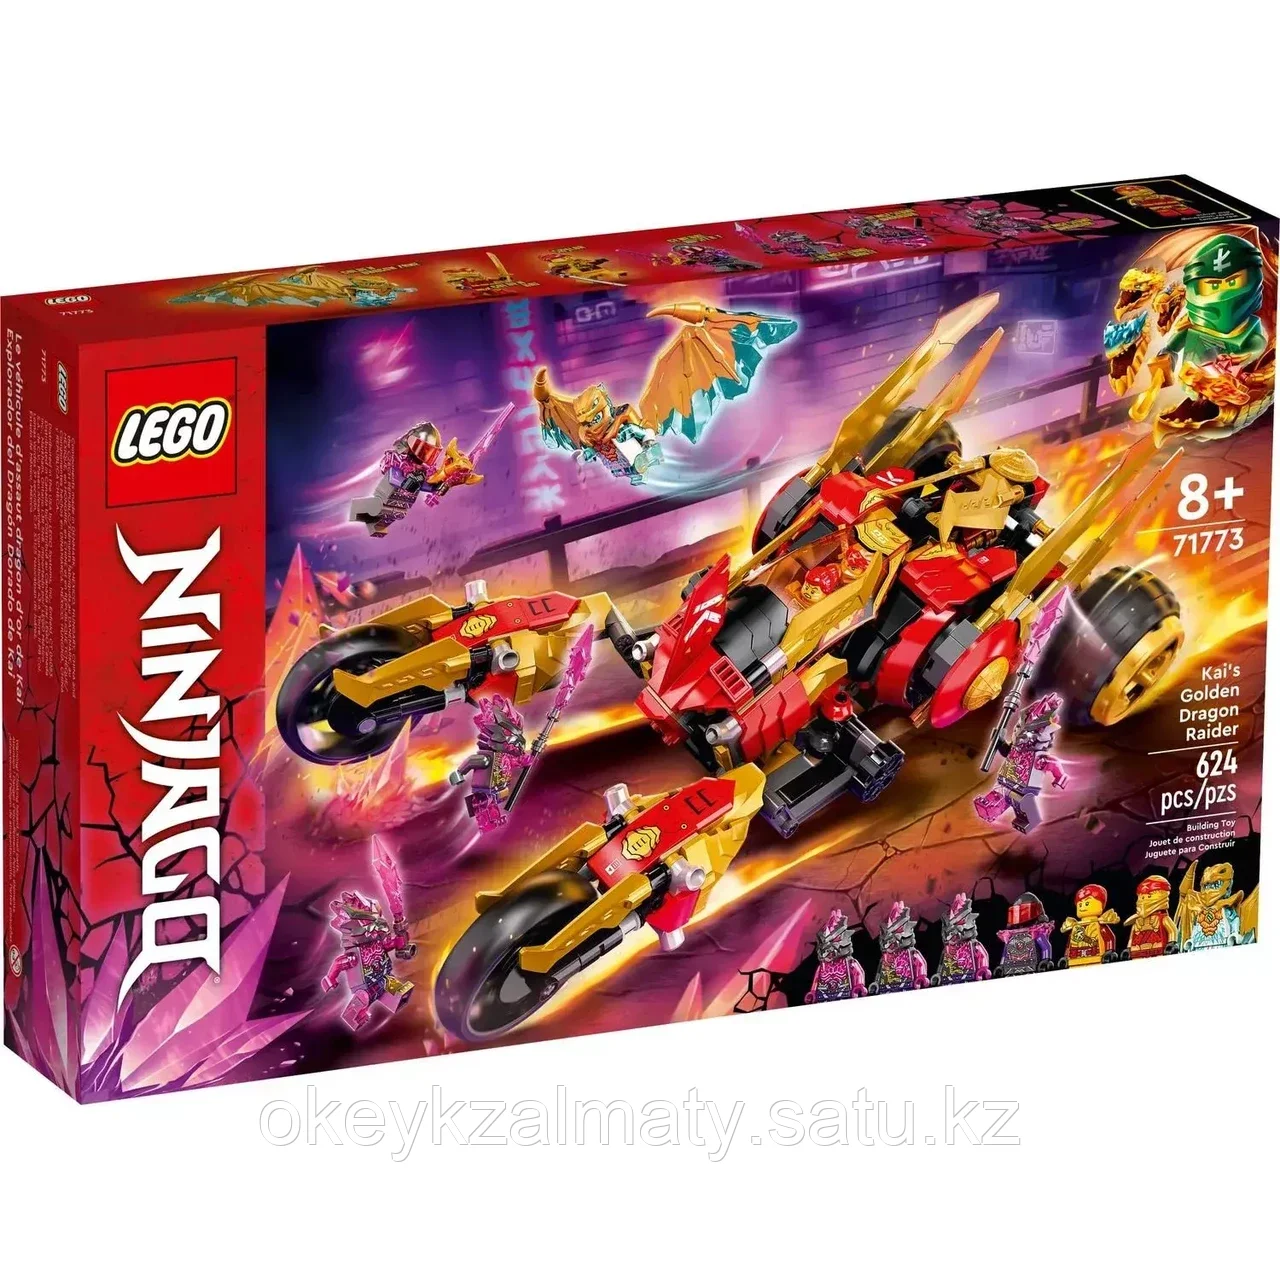 LEGO Ninjago: Багги Кая Золотой дракон 71773